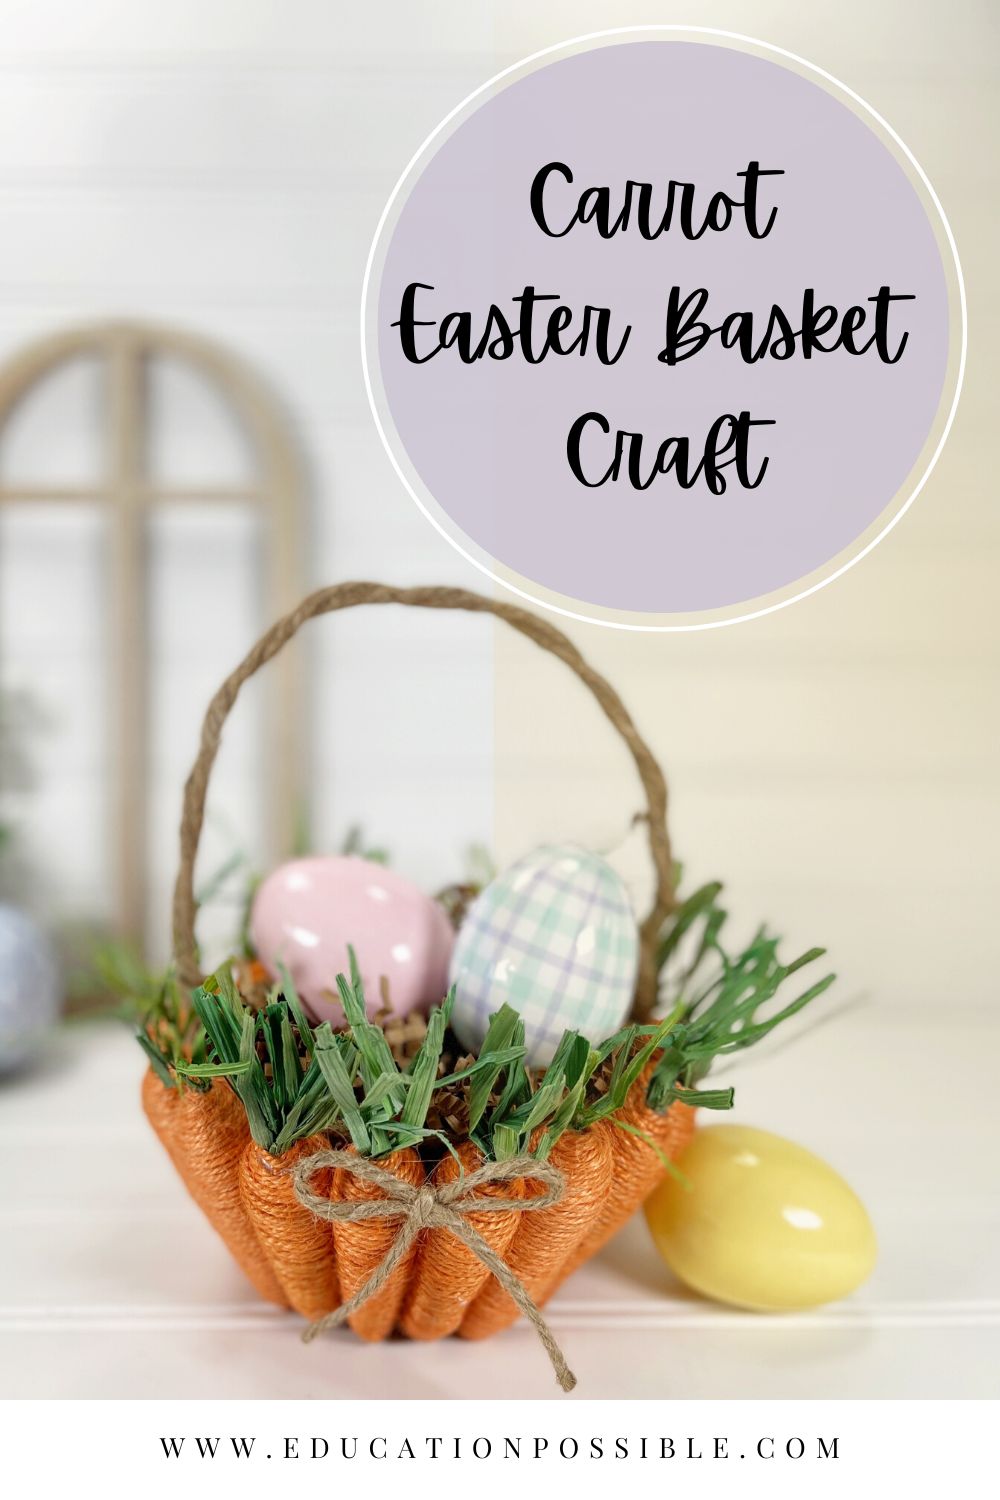 Carrot Easter Basket Craft